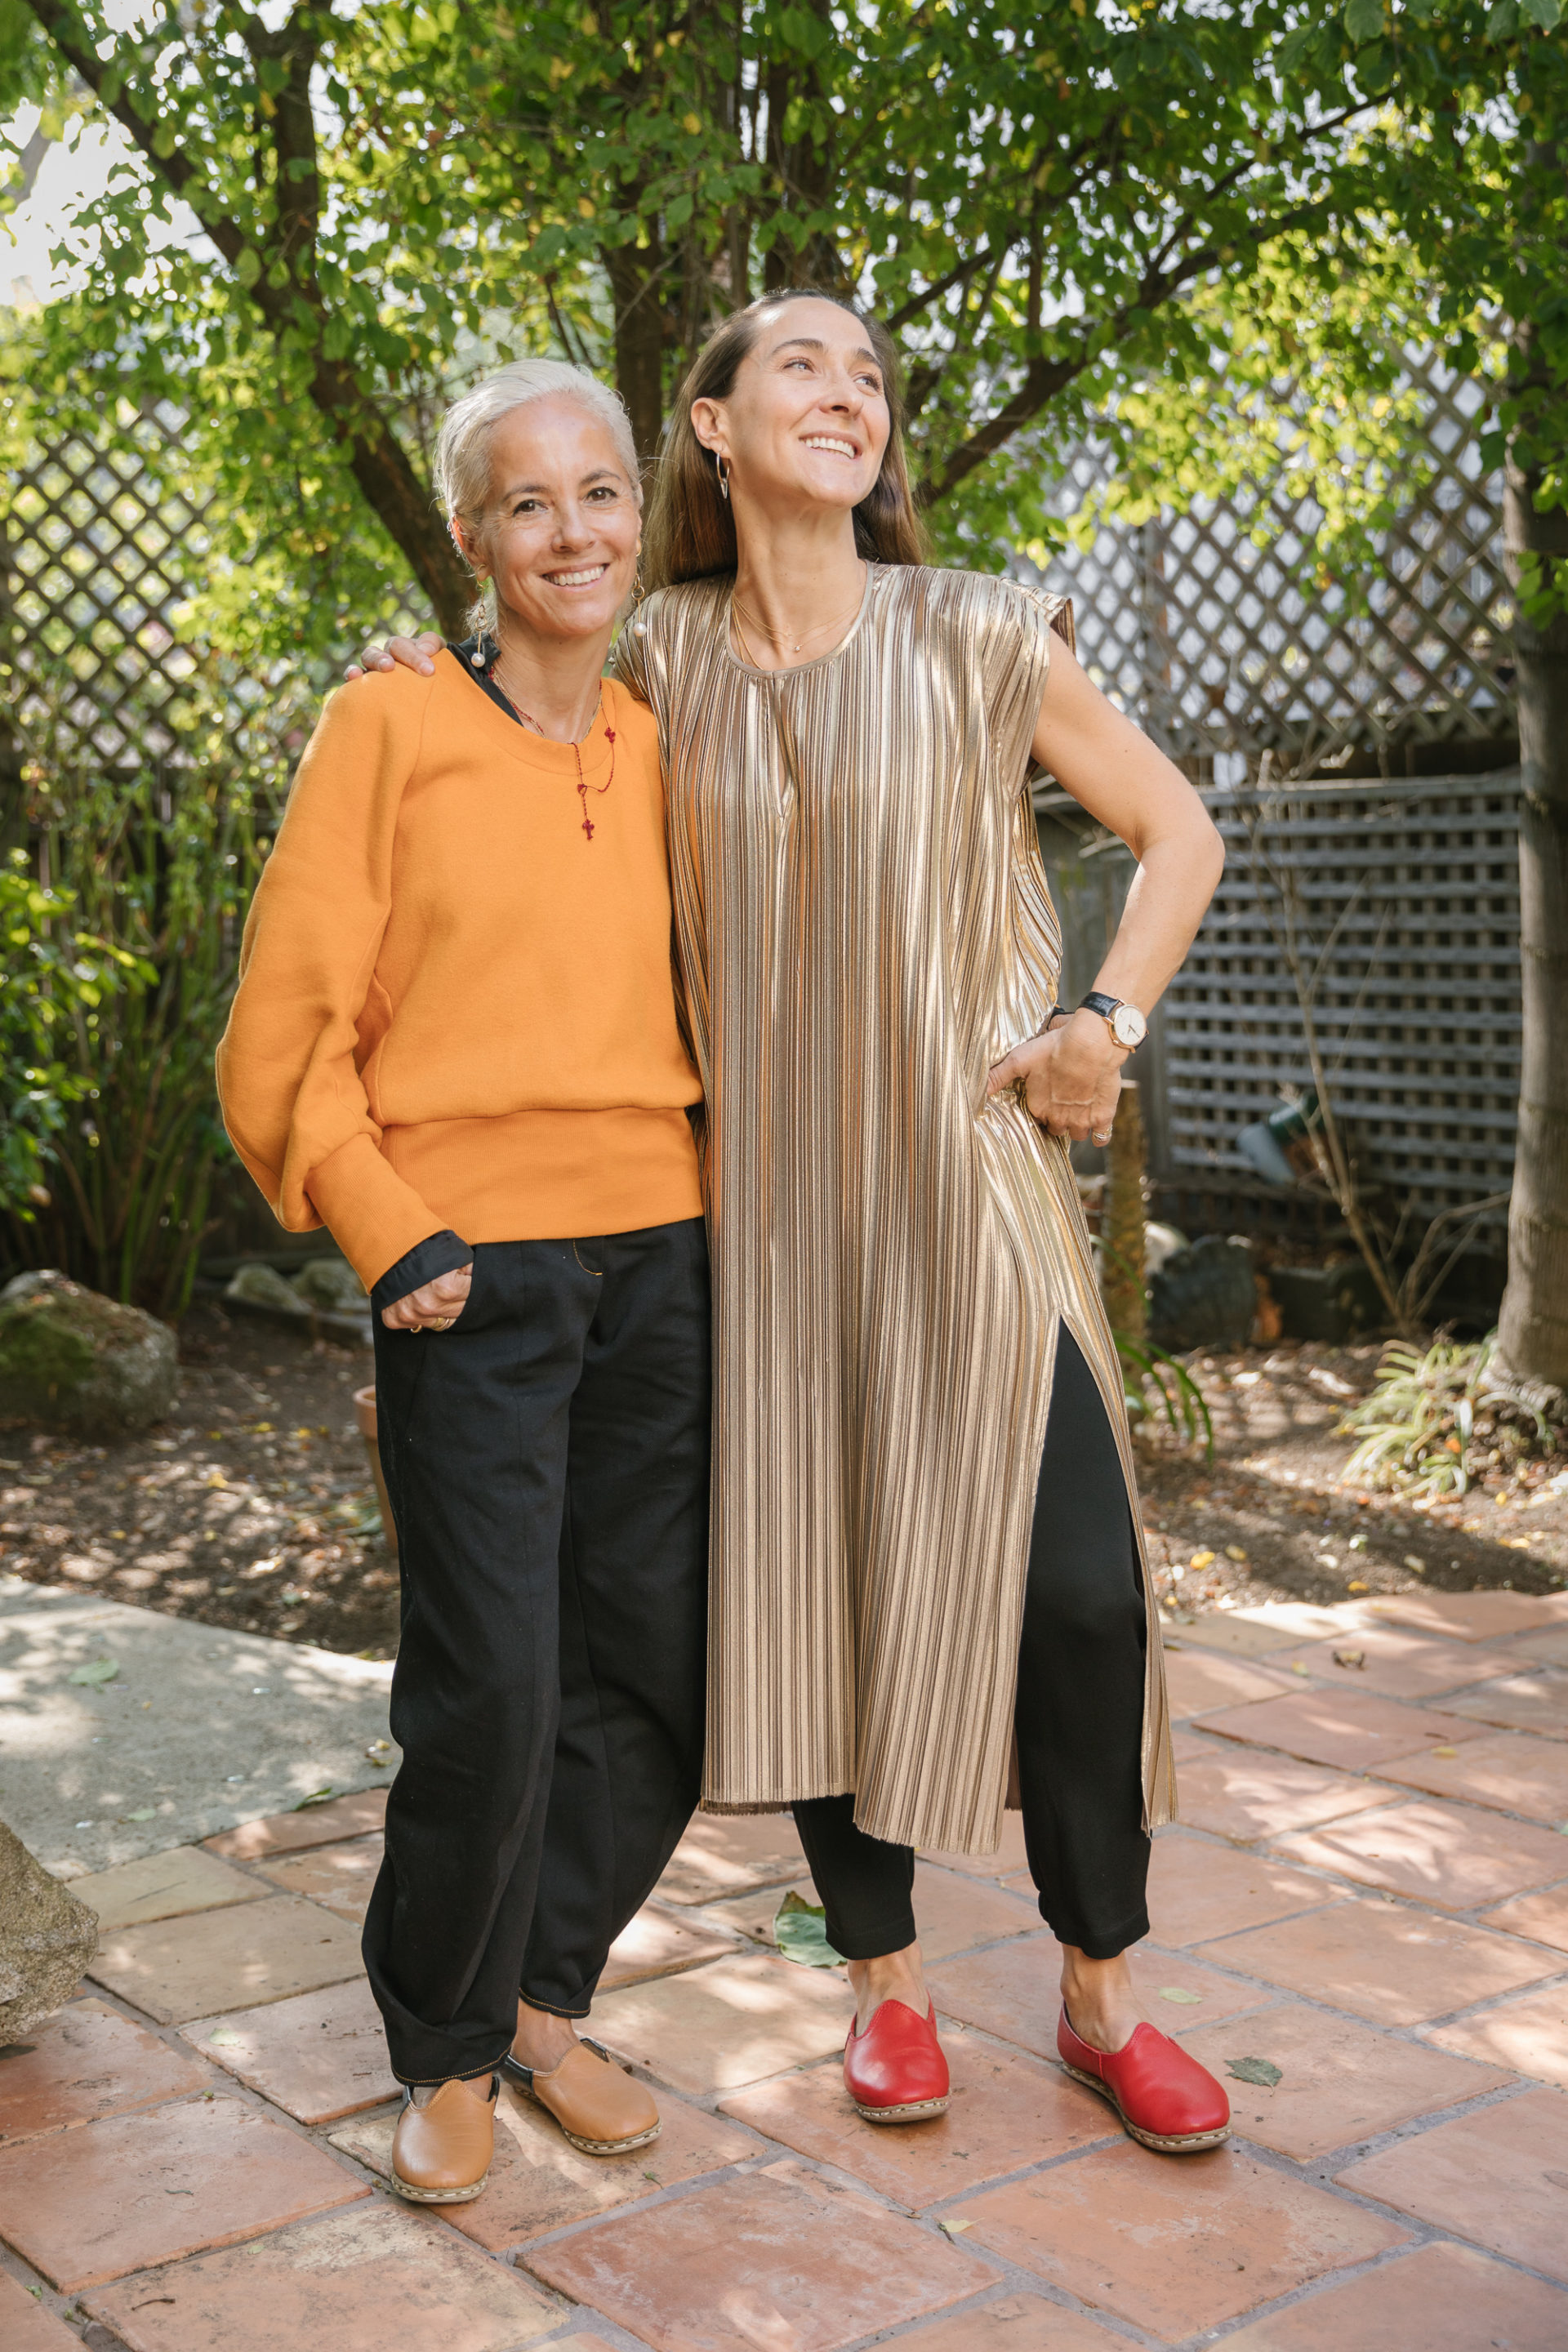 Designer Maria Cornejo and Chef Gabriela Cámara